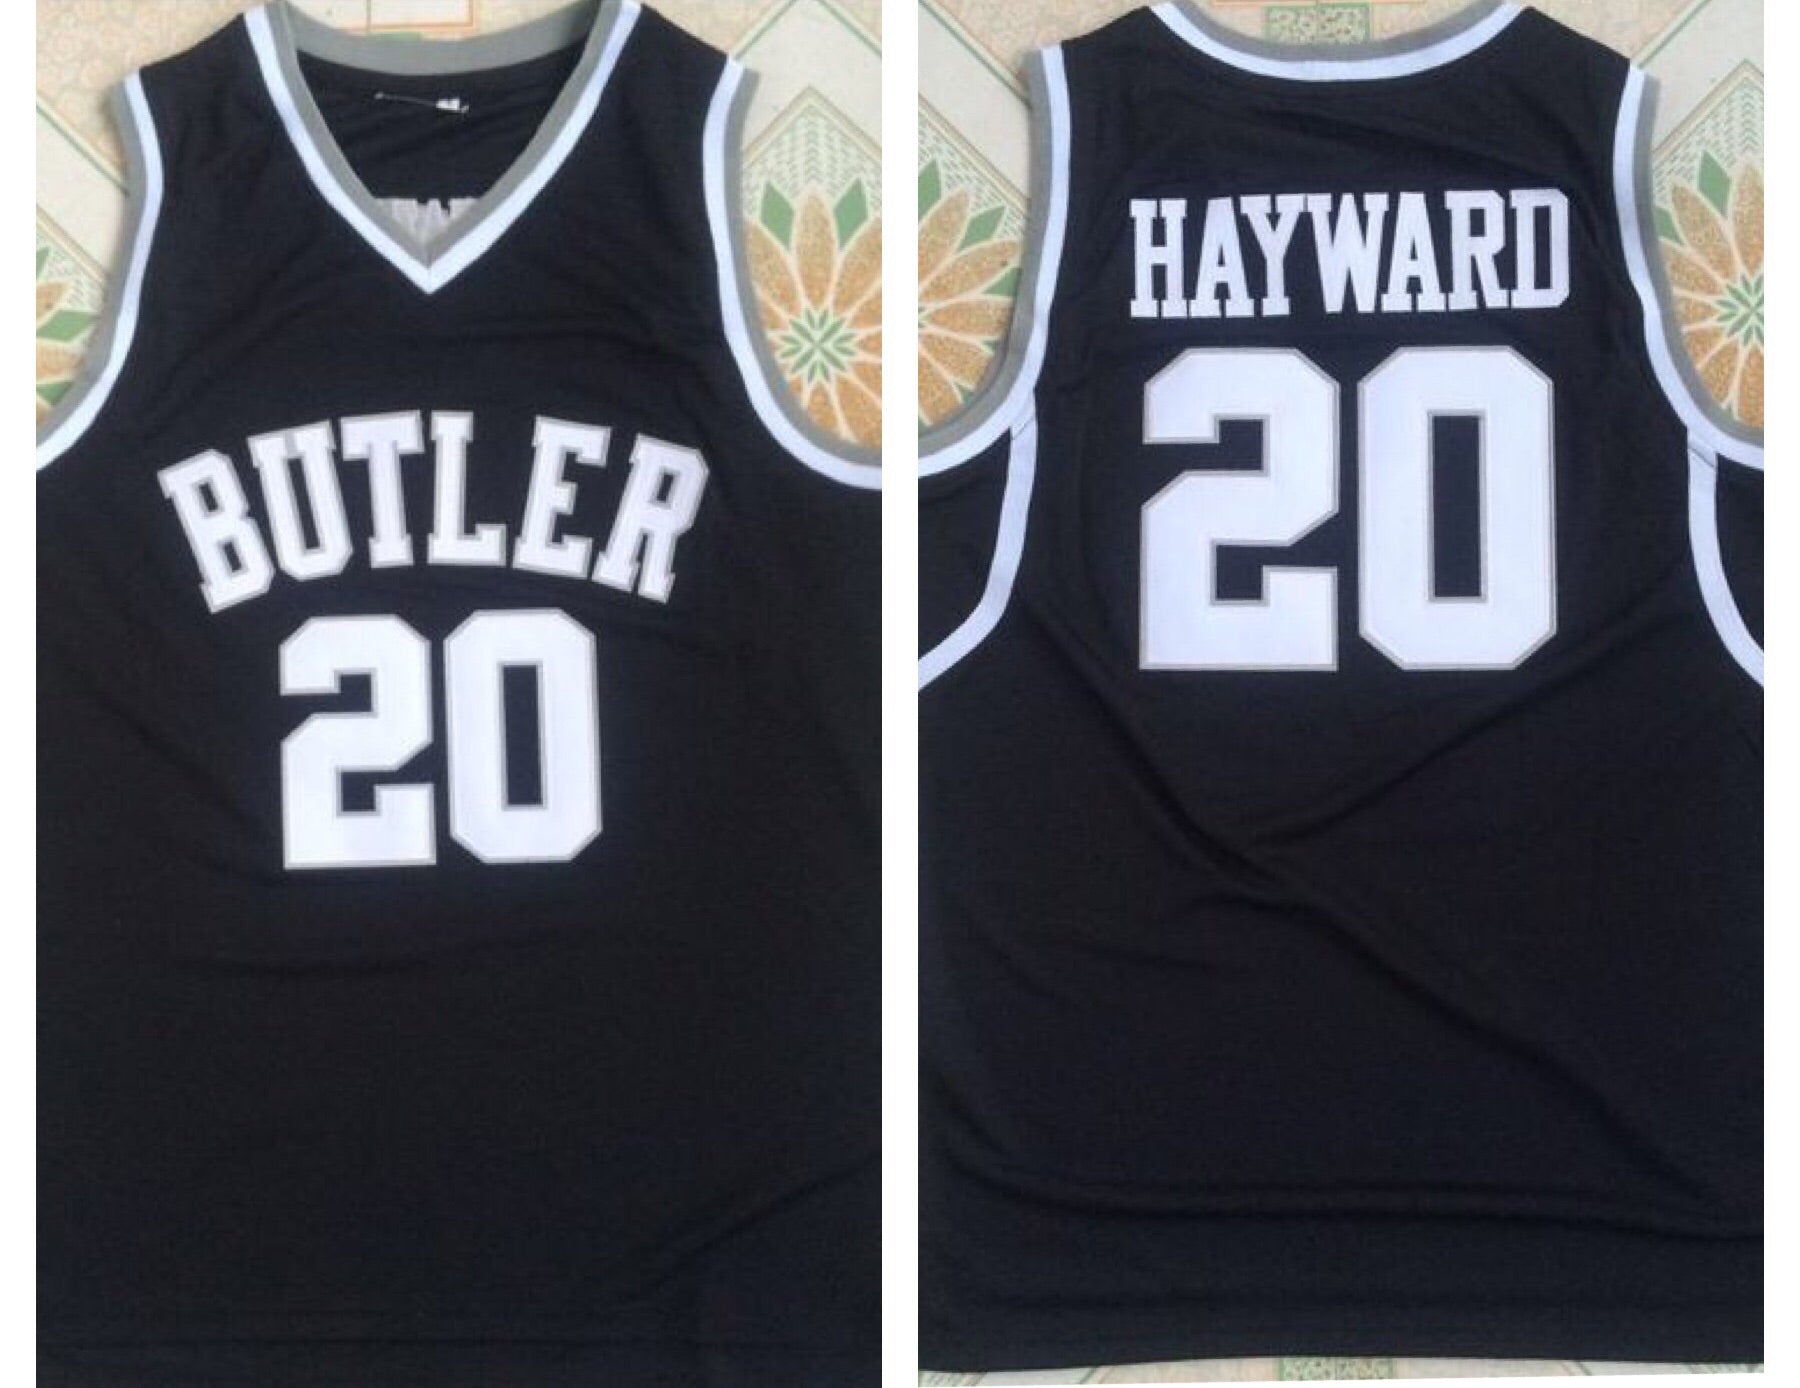 gordon hayward butler jersey